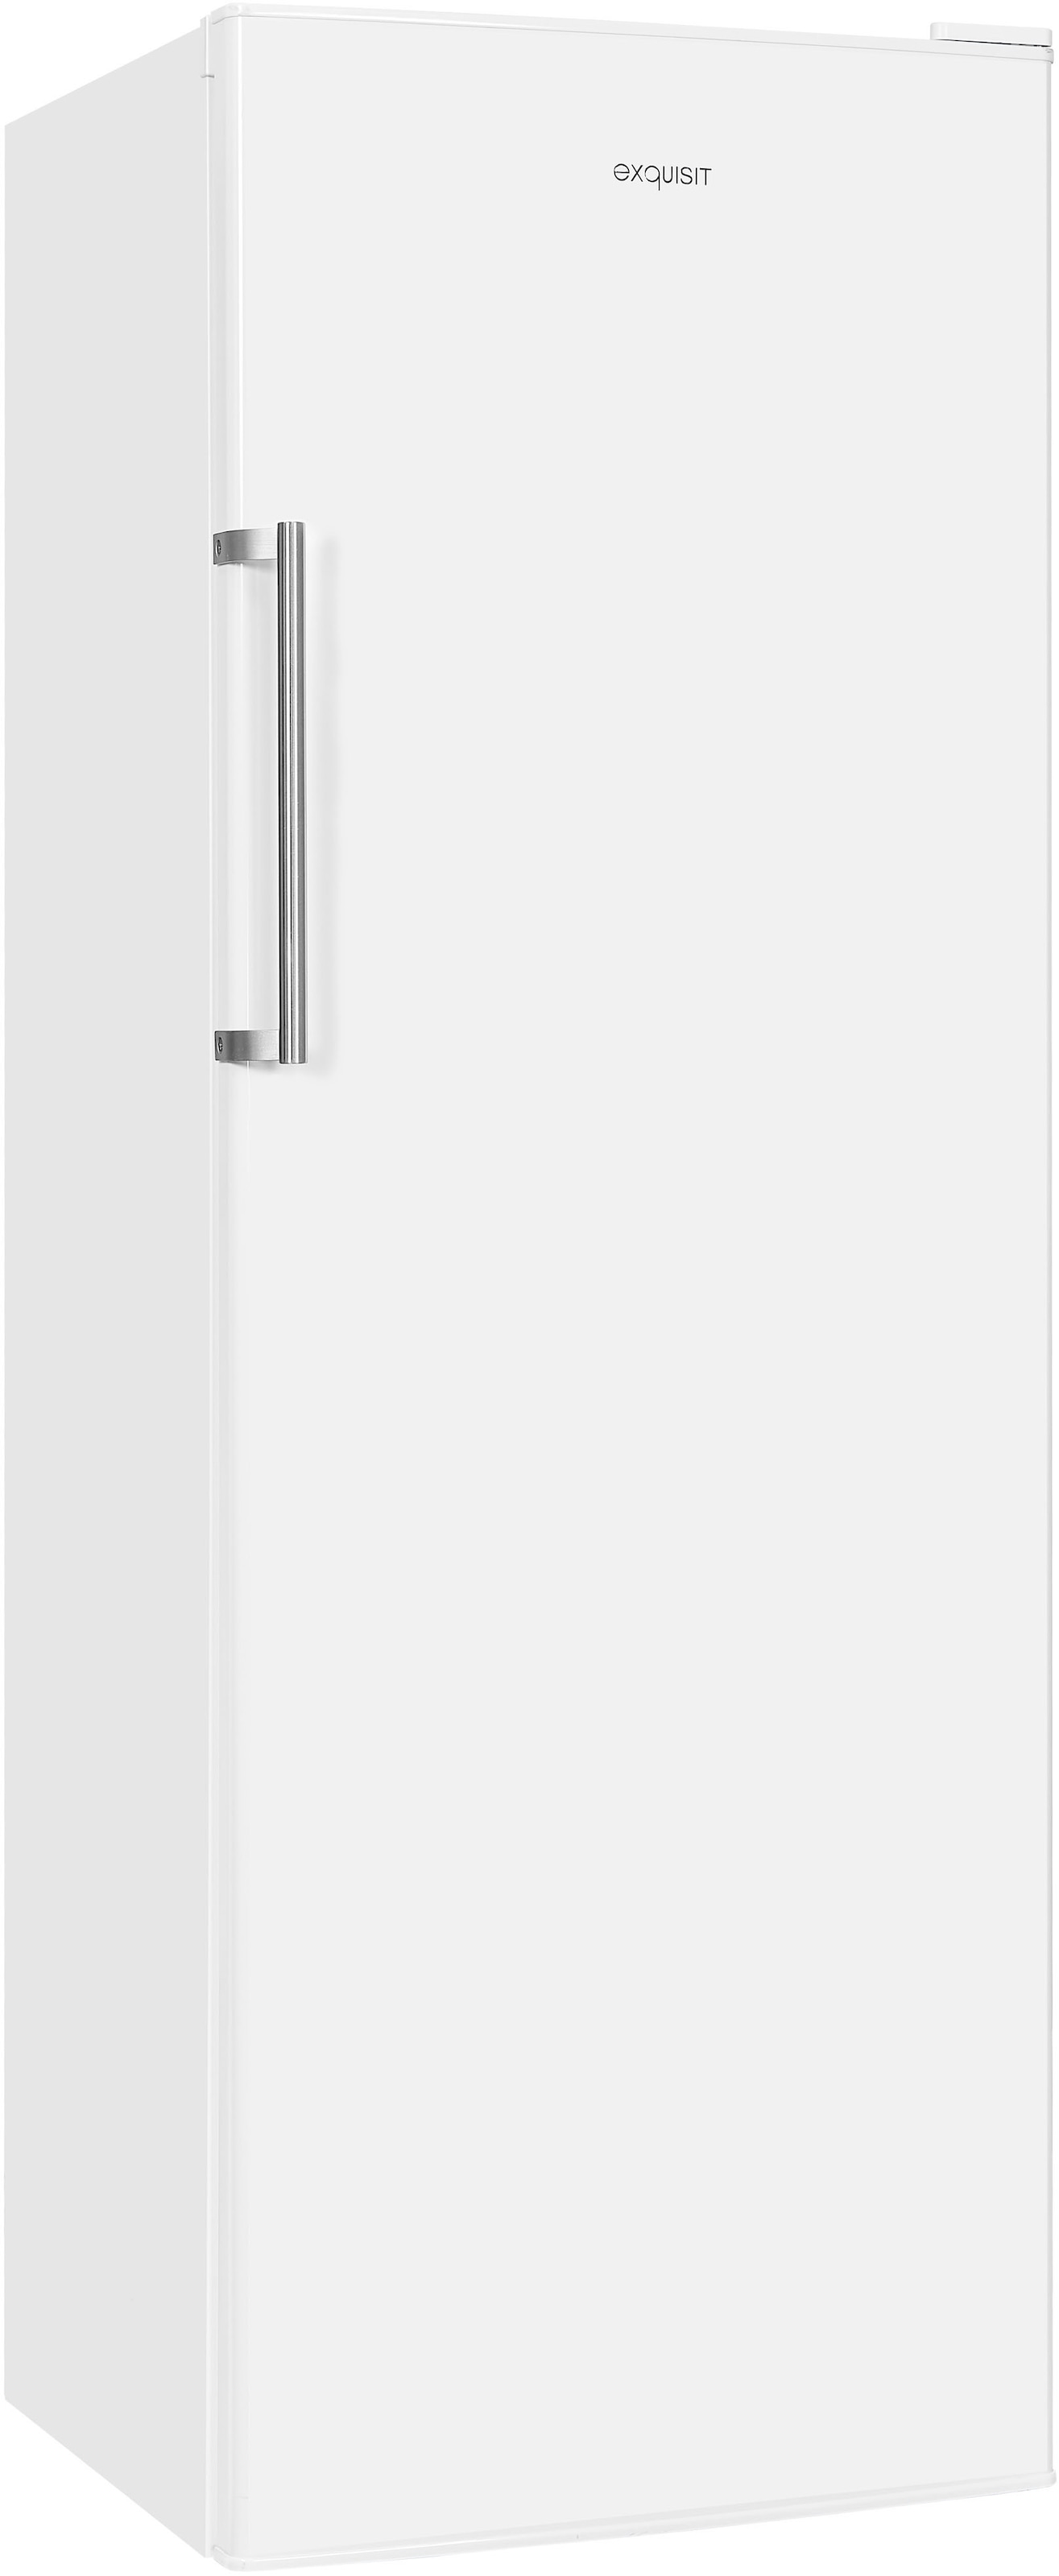 exquisit Vollraumkühlschrank »KS350-V-H-040D weiss«, KS350-V-H-040D weiss, 171,5 cm hoch, 60 cm breit